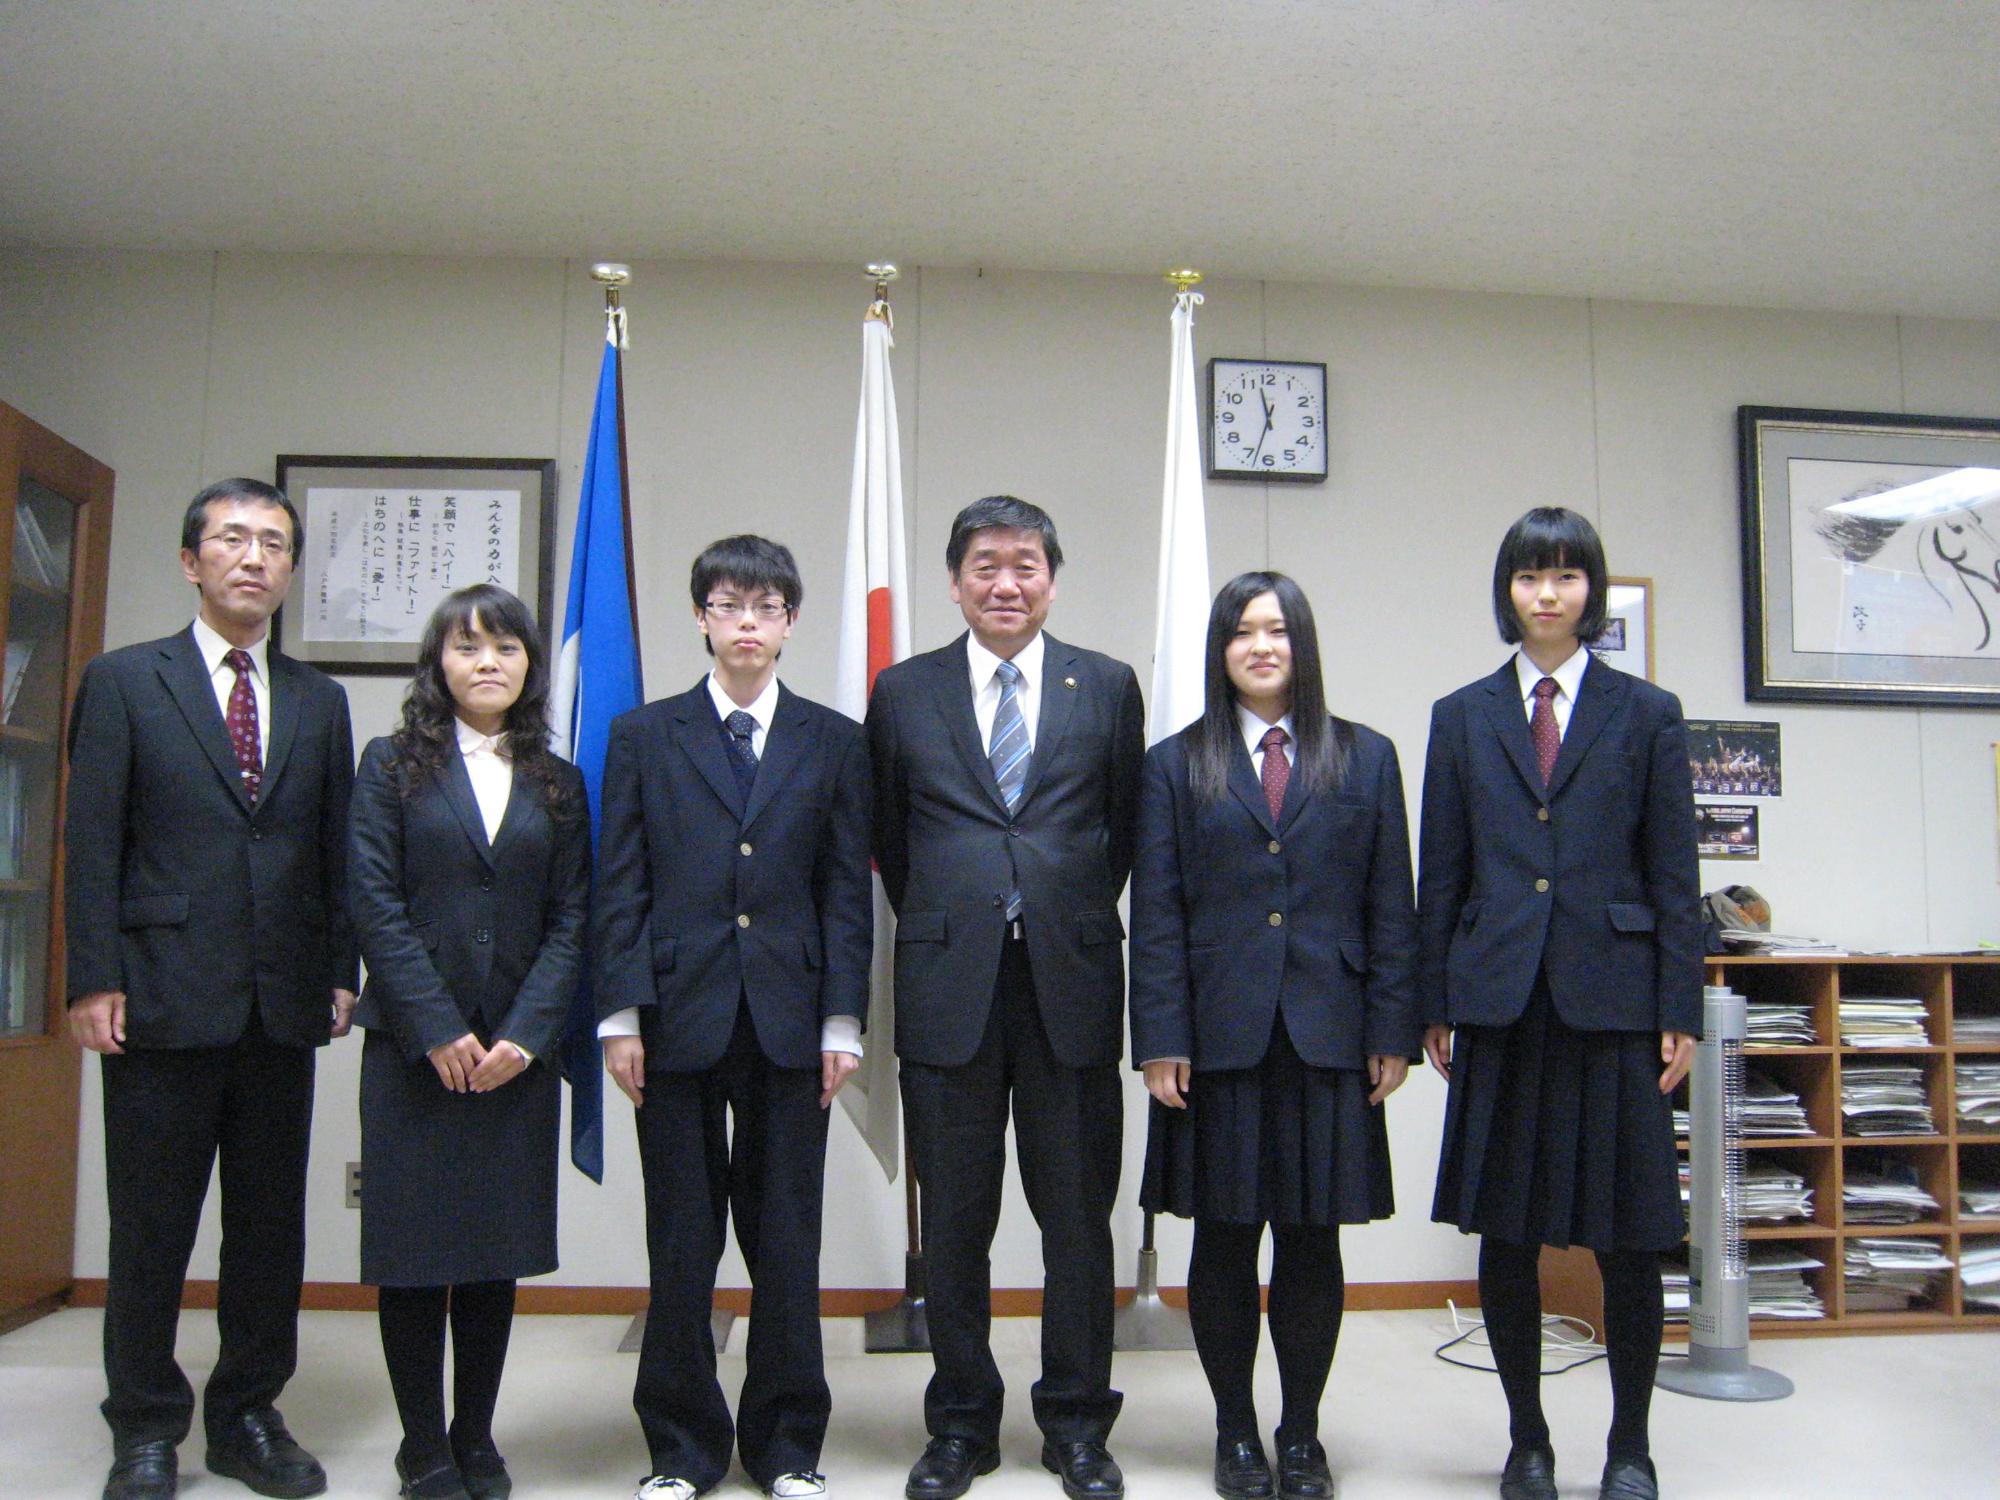 八戸工業大学第二高等学校の生徒23名及び引率教員2名のうち代表生徒3名が、小林市長らと記念撮影している写真